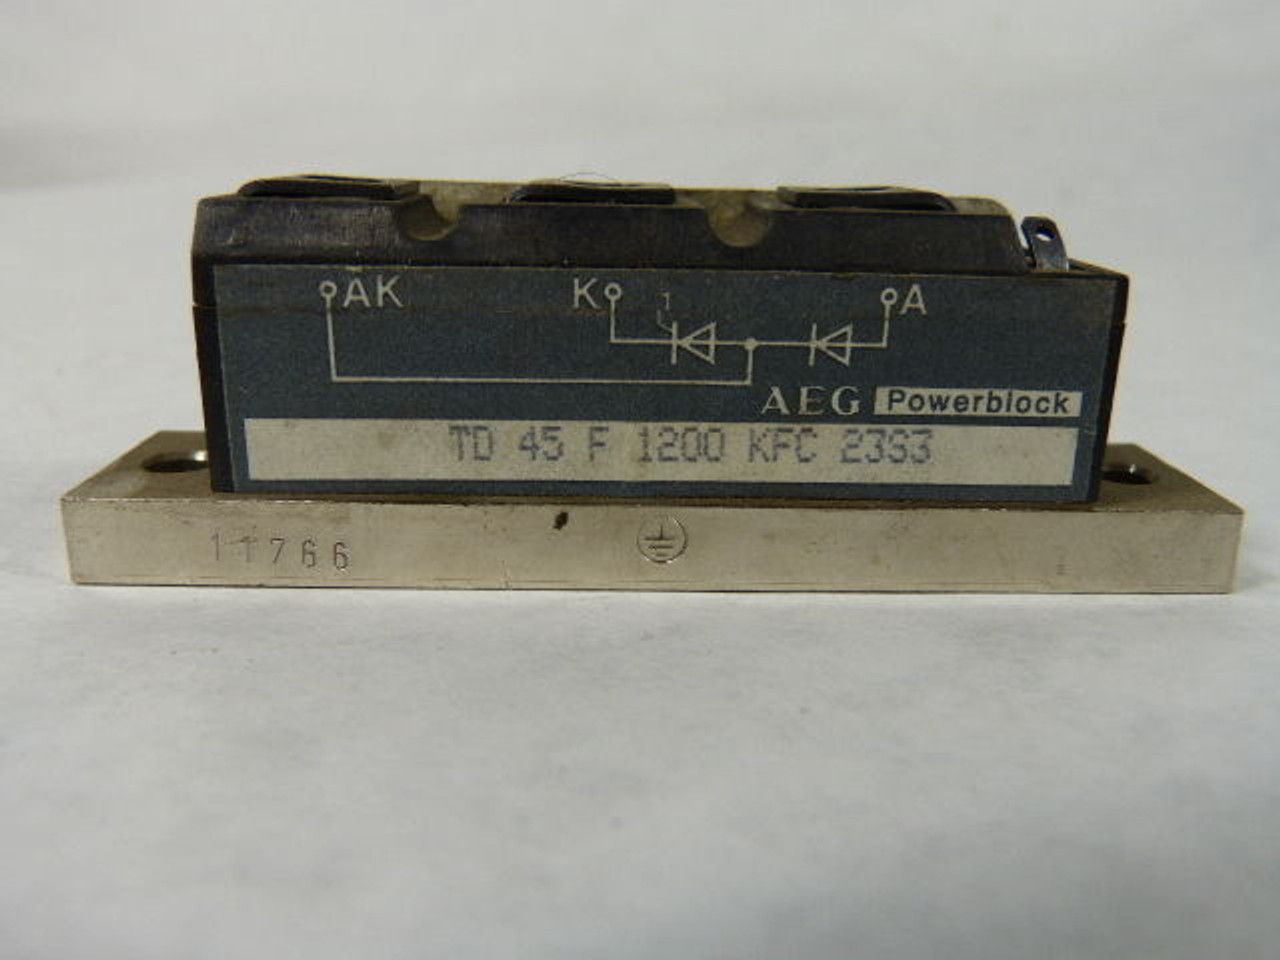 AEG TD-45-F-1200-KFC-23S3 Power Block USED